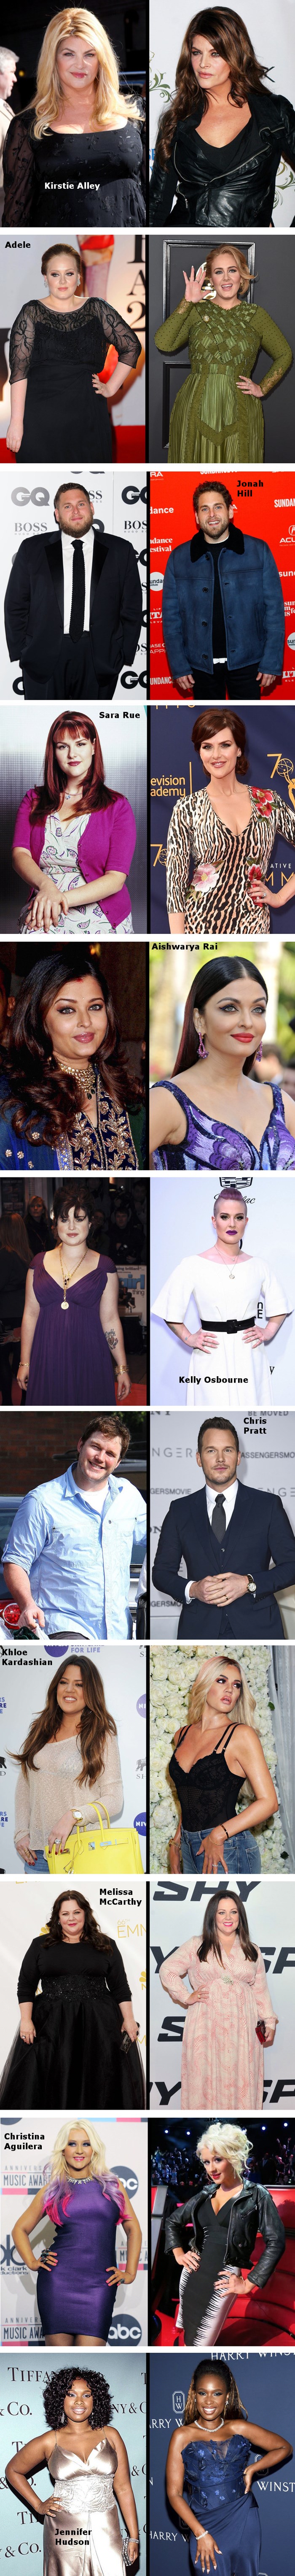 11 slavnih osoba koje su pobijedile borbu s kilogramima i promijenile svoj izgled 